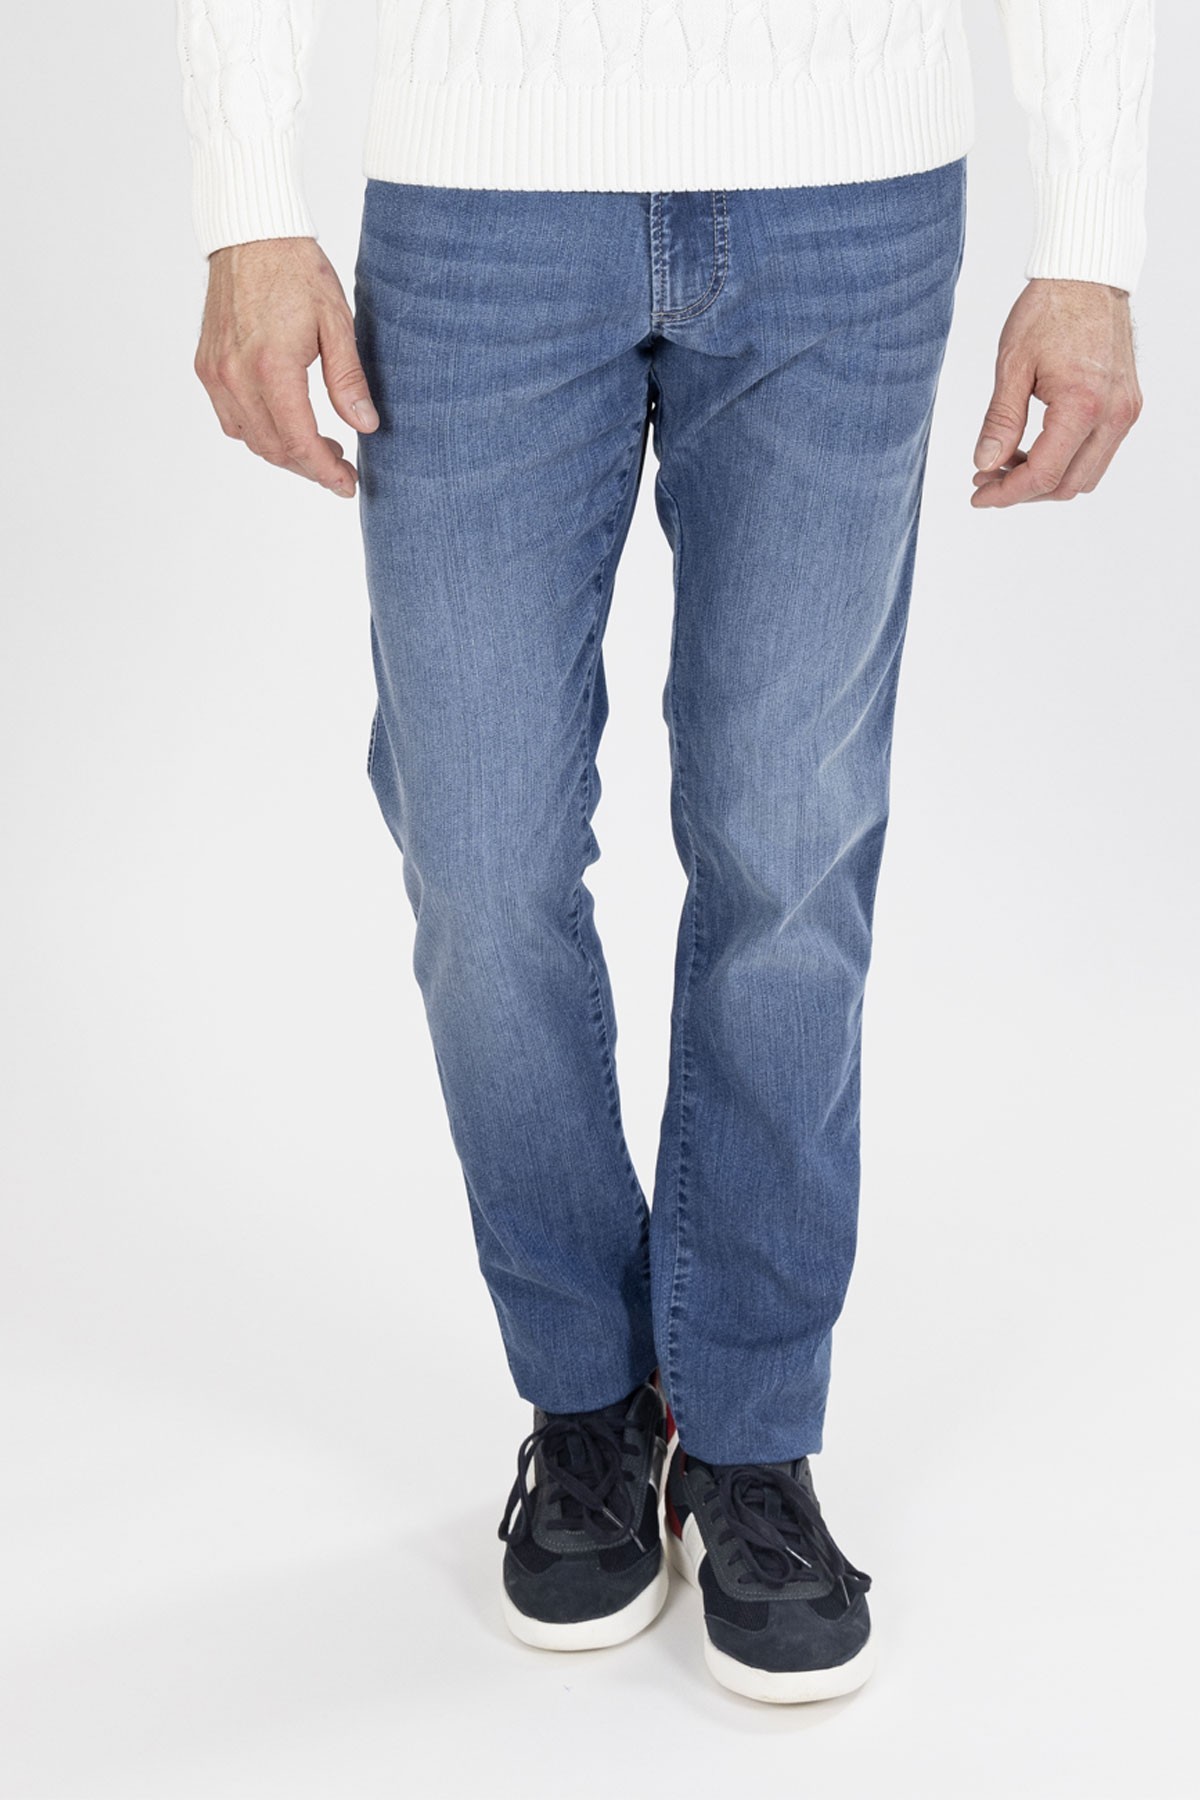 Jean 5 poches bleu jean